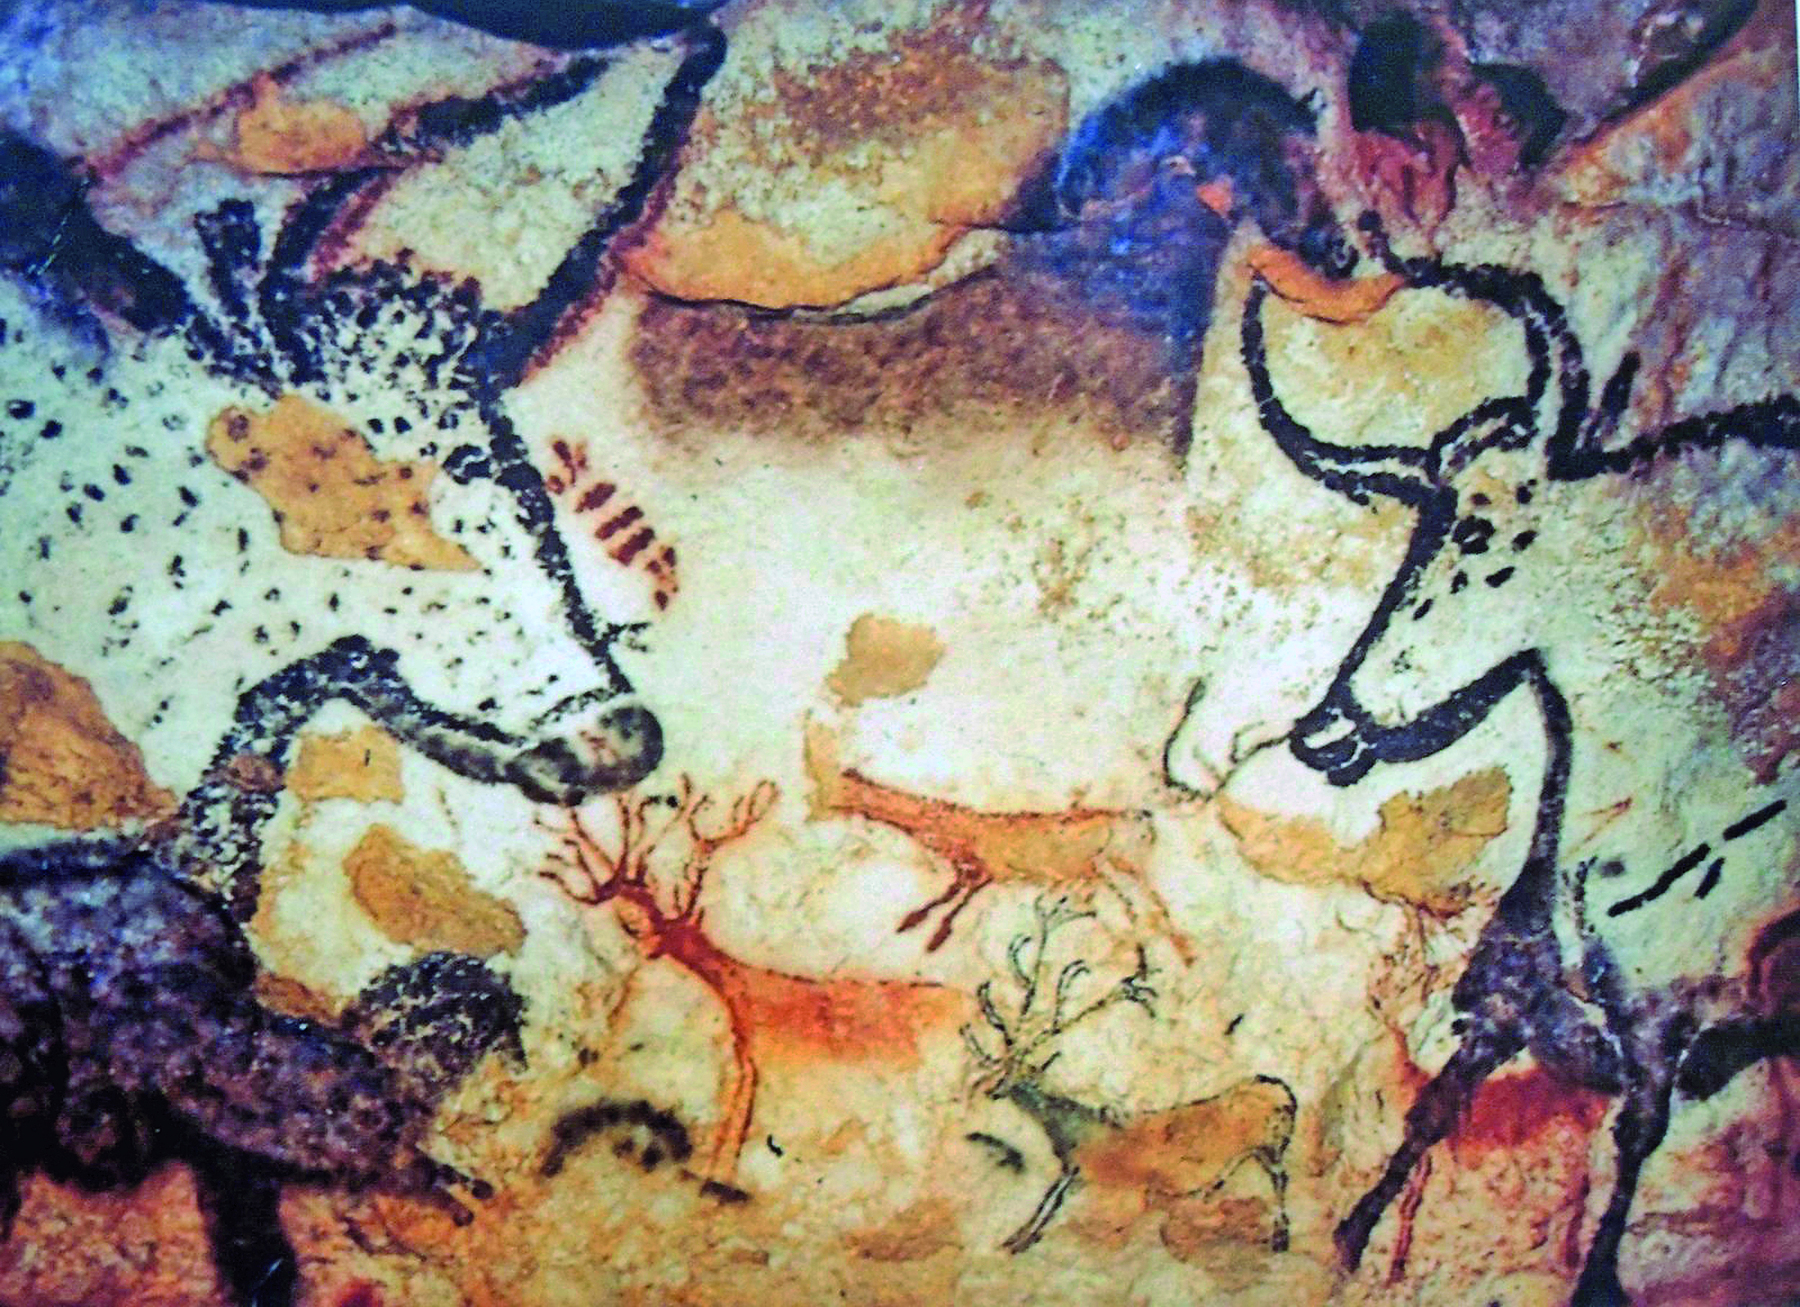 Fotografia. Parede de uma caverna, contendo pinturas rupestres representando animais como bisões, cavalos e cervos.